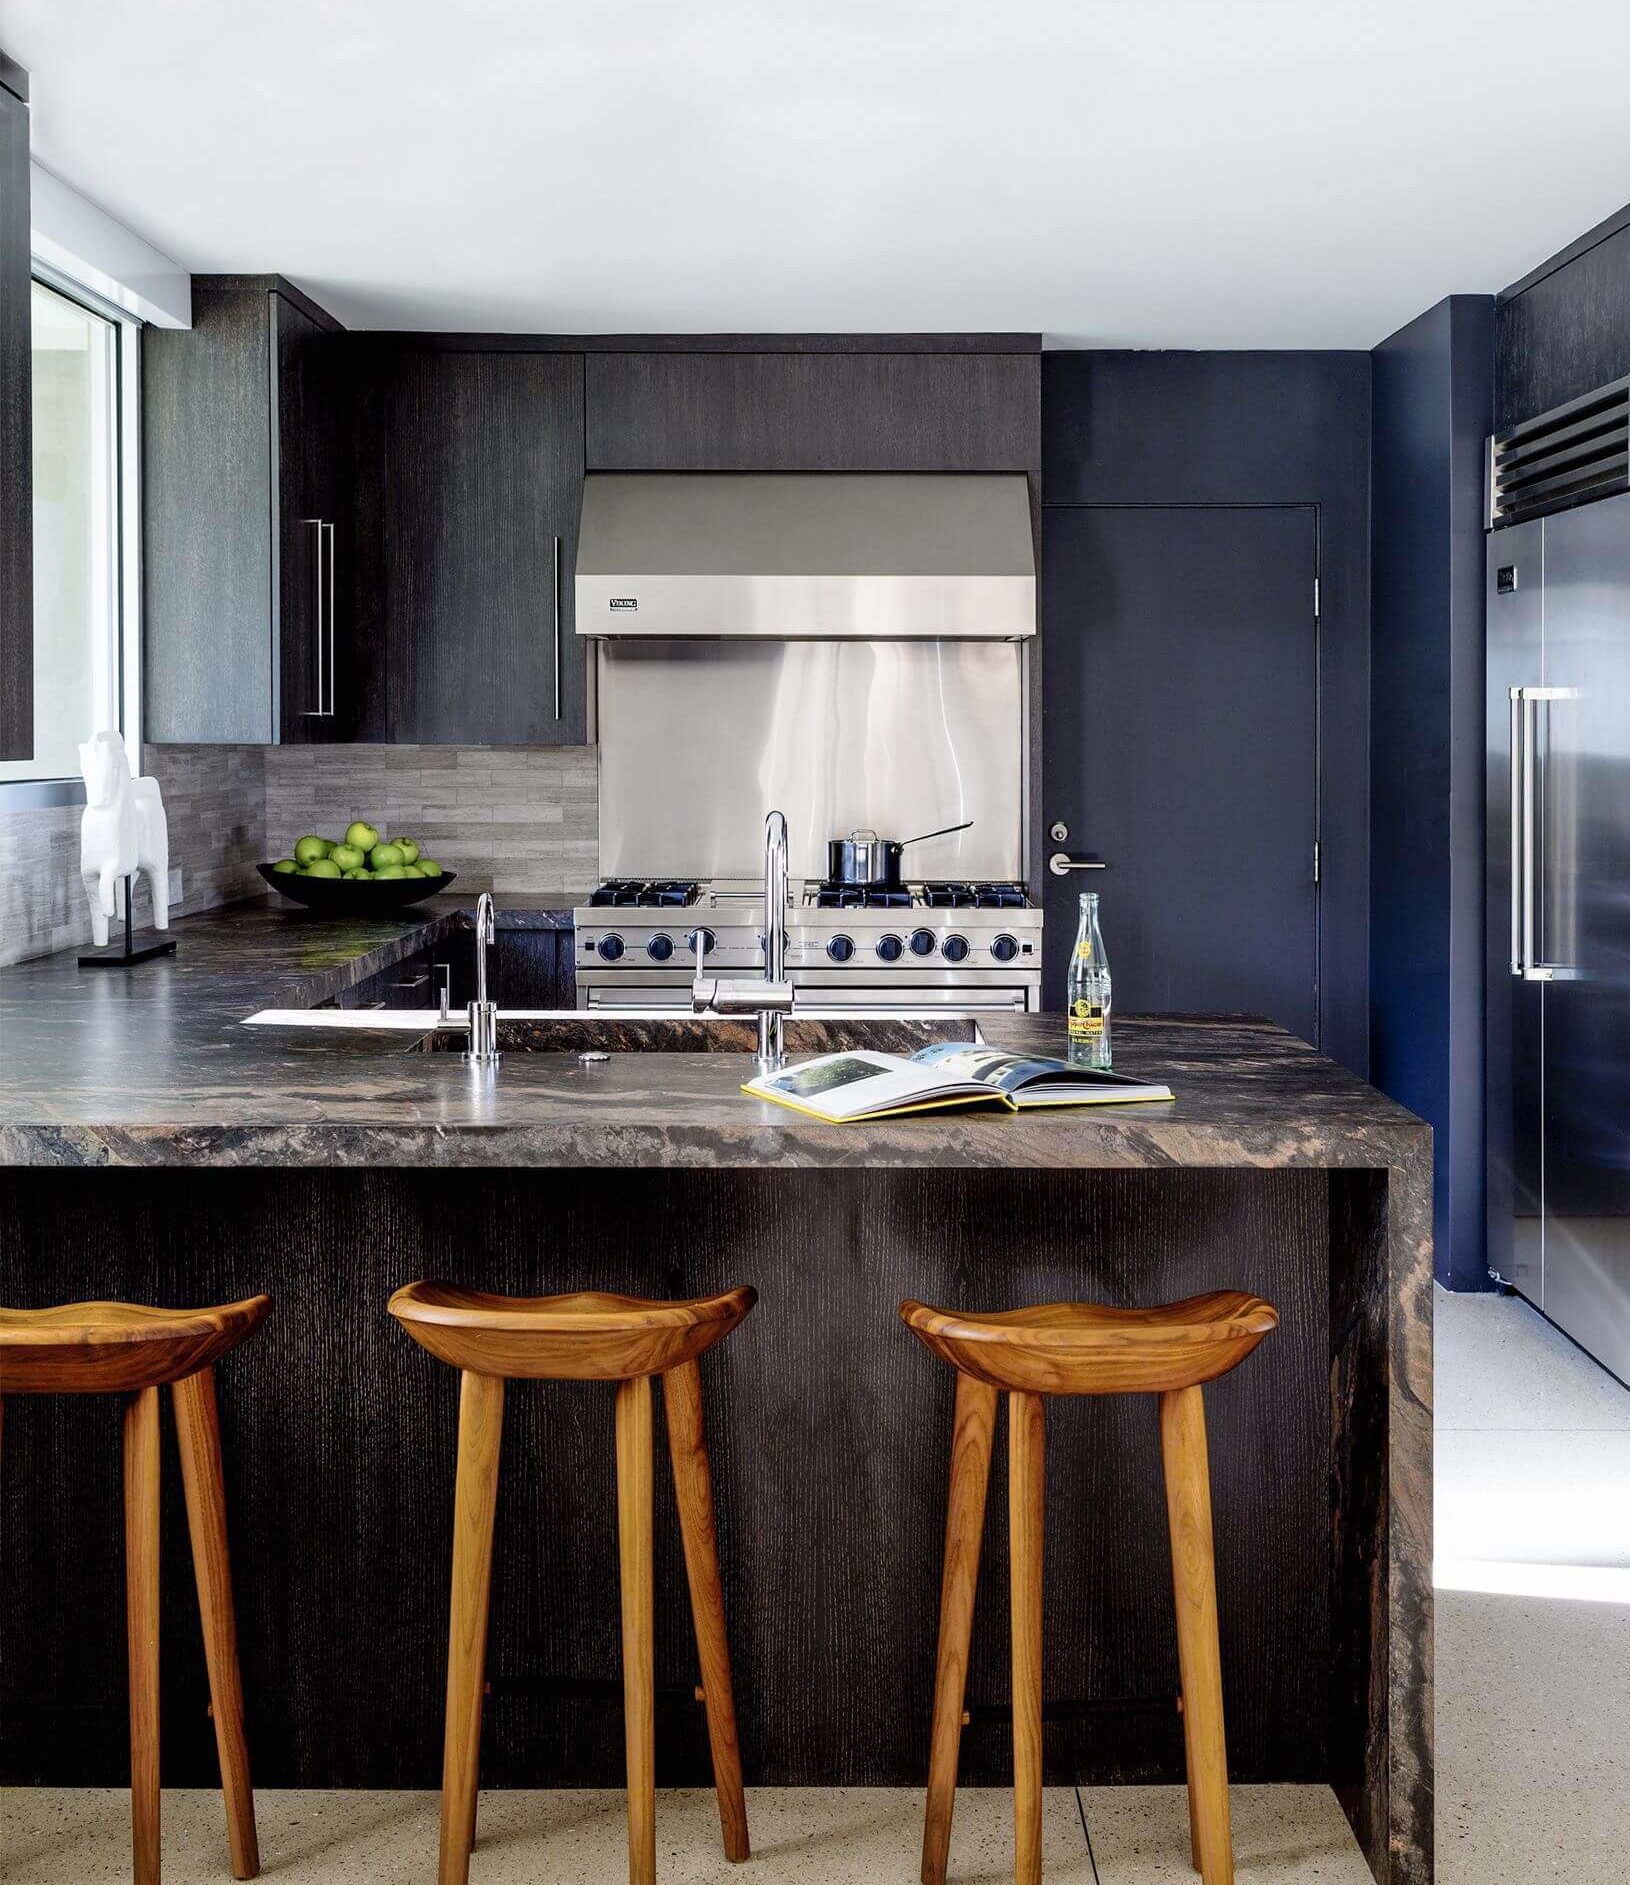 9.-minimalist-kitchen-design-e1545330546540.jpg